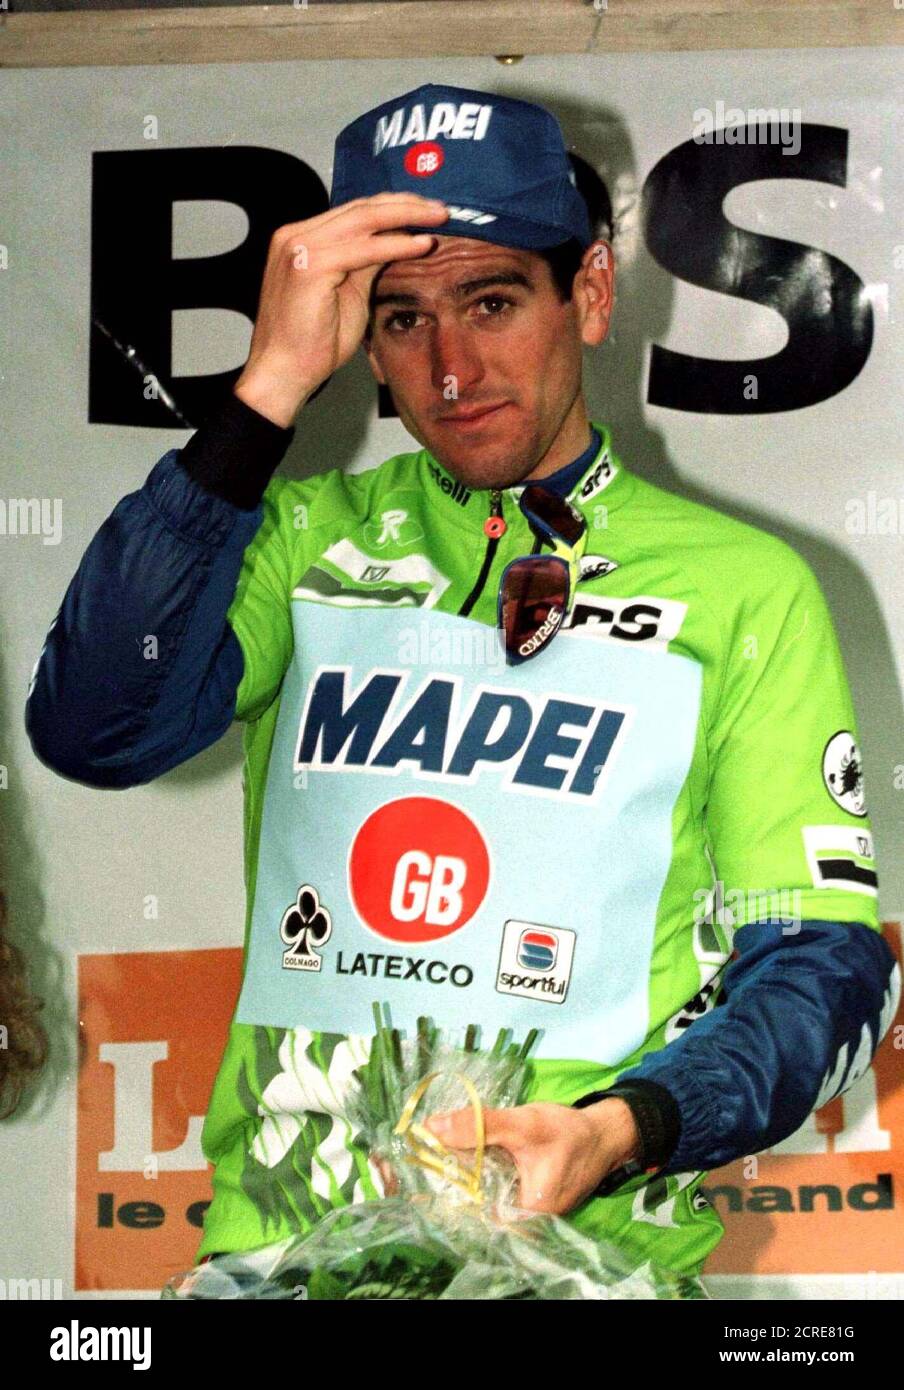 Le champion du monde espagnol Abraham Olana incline sa casquette alors  qu'il se tient sur le podium lors d'une cérémonie à Genève le 12 mai.  Olana, s'est installé comme favori pour le